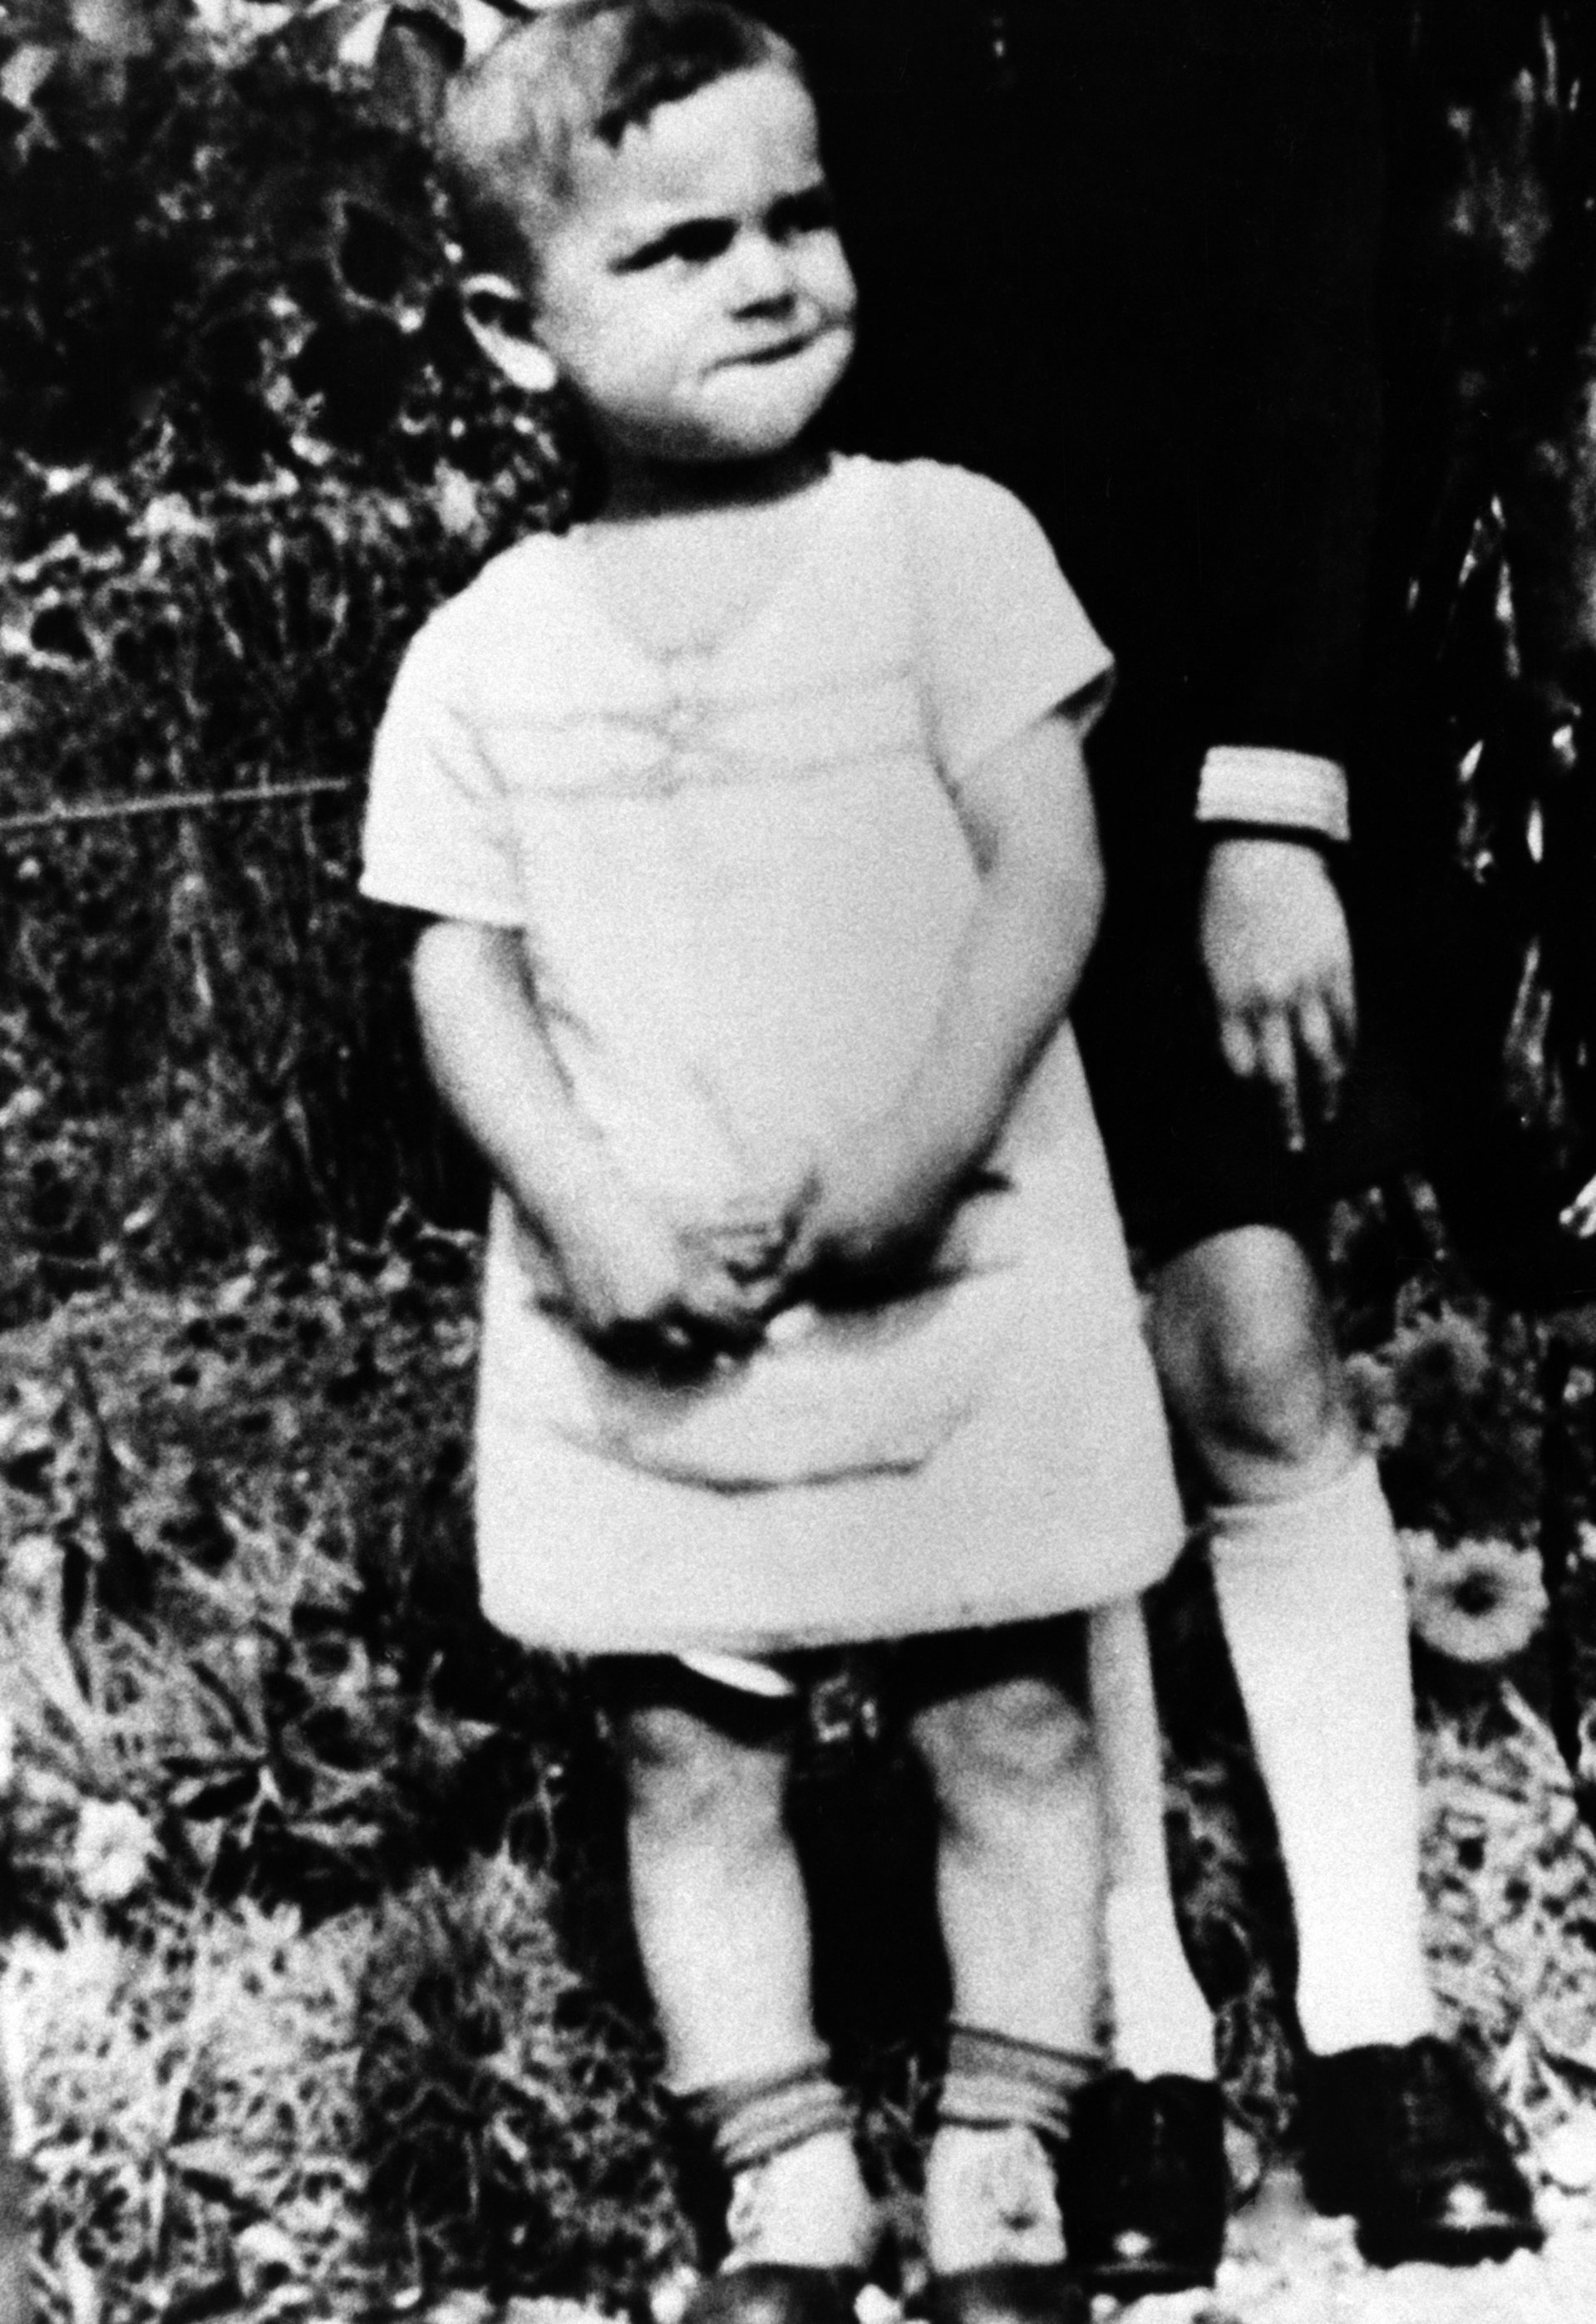 Schwarz-Weiss-Aufnahme von Helmut Kohl als Kleinkind